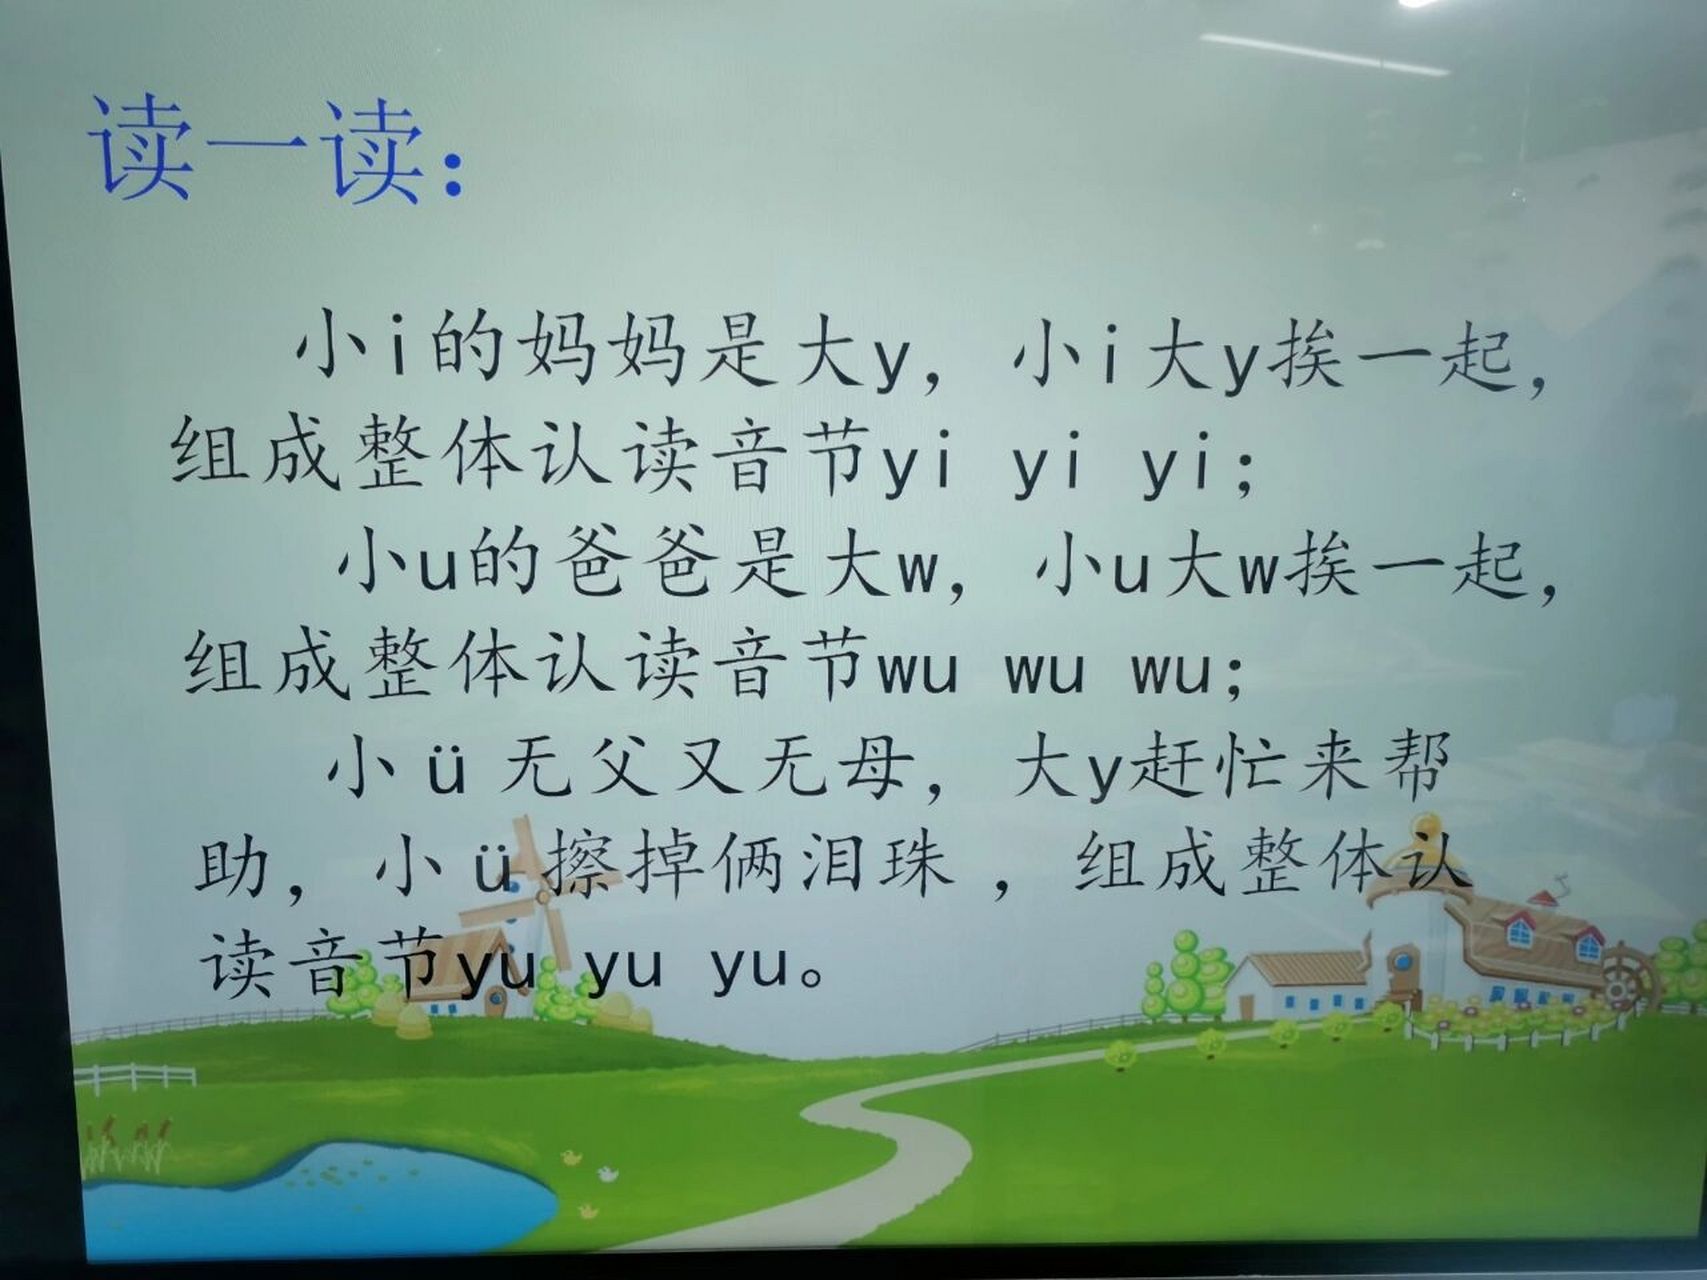 拼音—整体认读音节故事儿歌来巧记 整体认读  yi wu wu的巧记儿歌